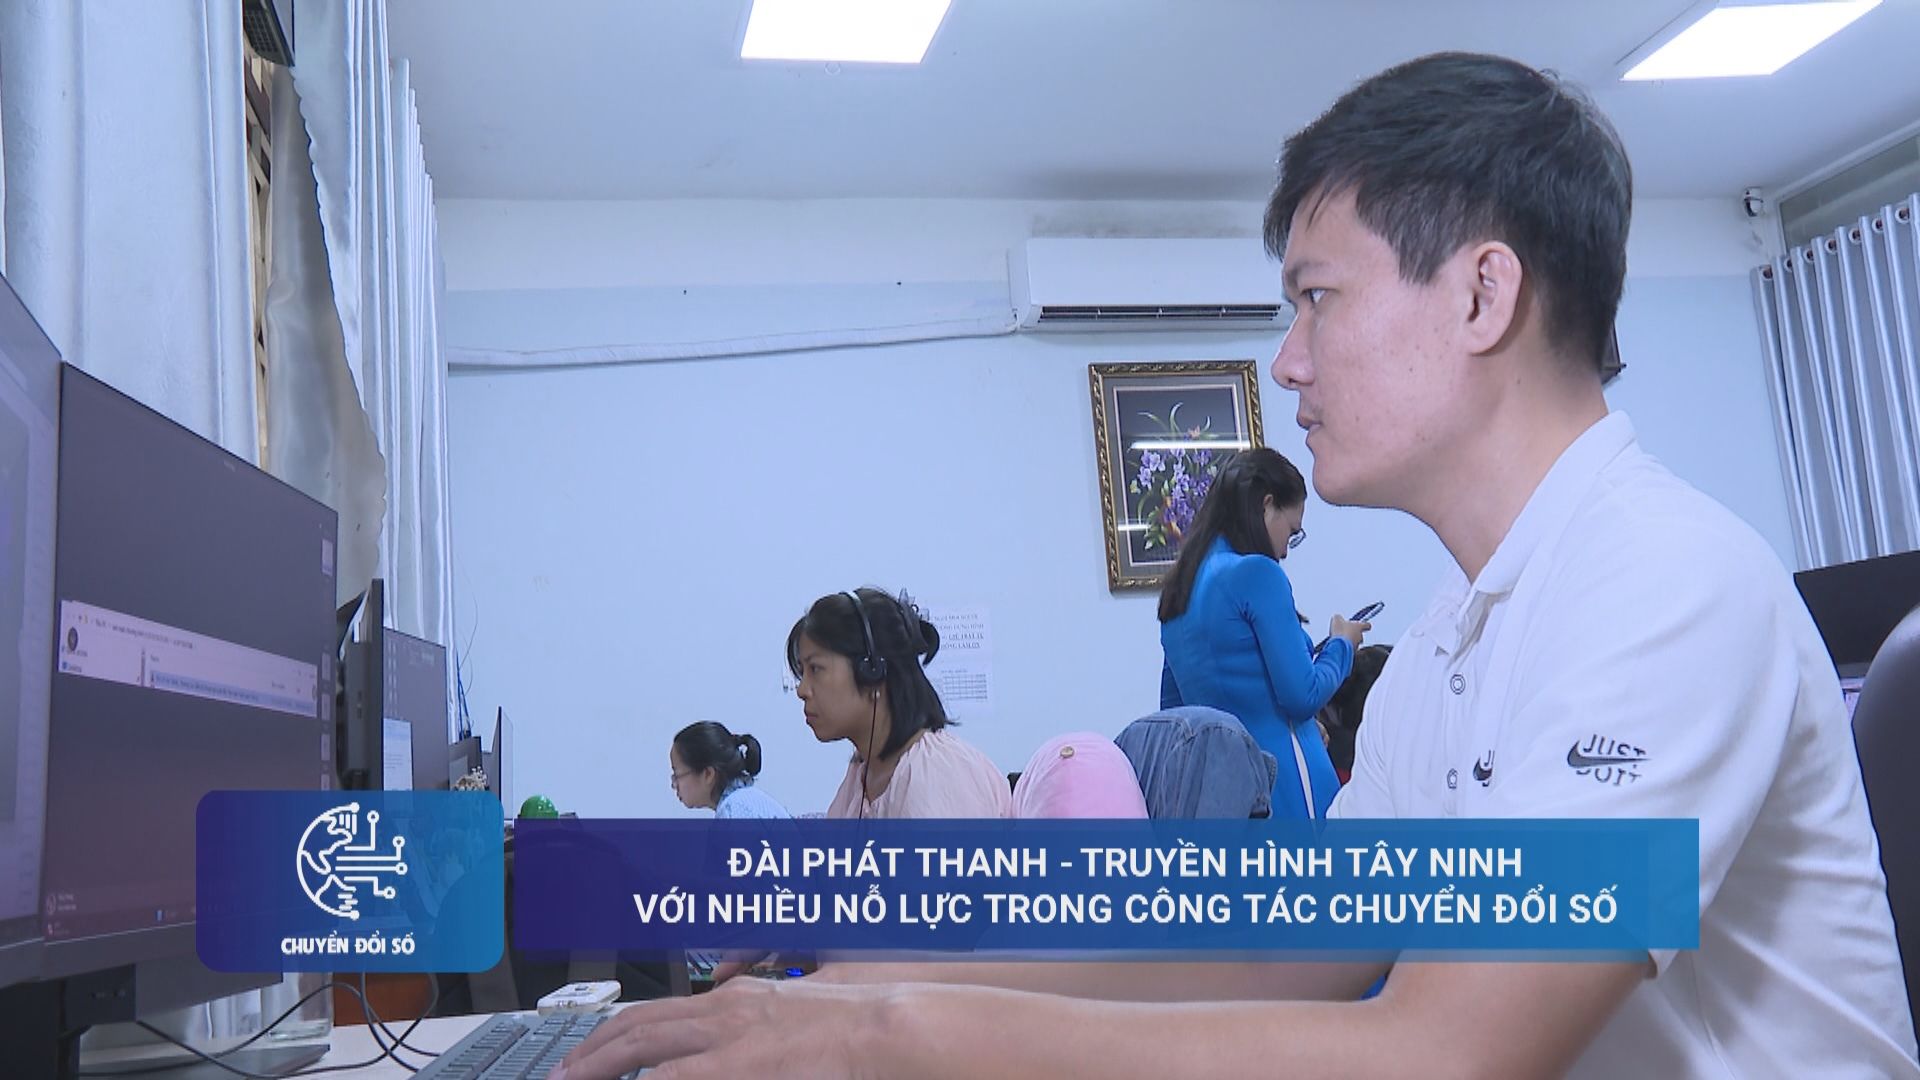 Đài Phát thanh - Truyền hình Tây Ninh với nhiều nỗ lực trong công tác chuyển đổi số | CHUYỂN ĐỔI SỐ | TayNinhTV